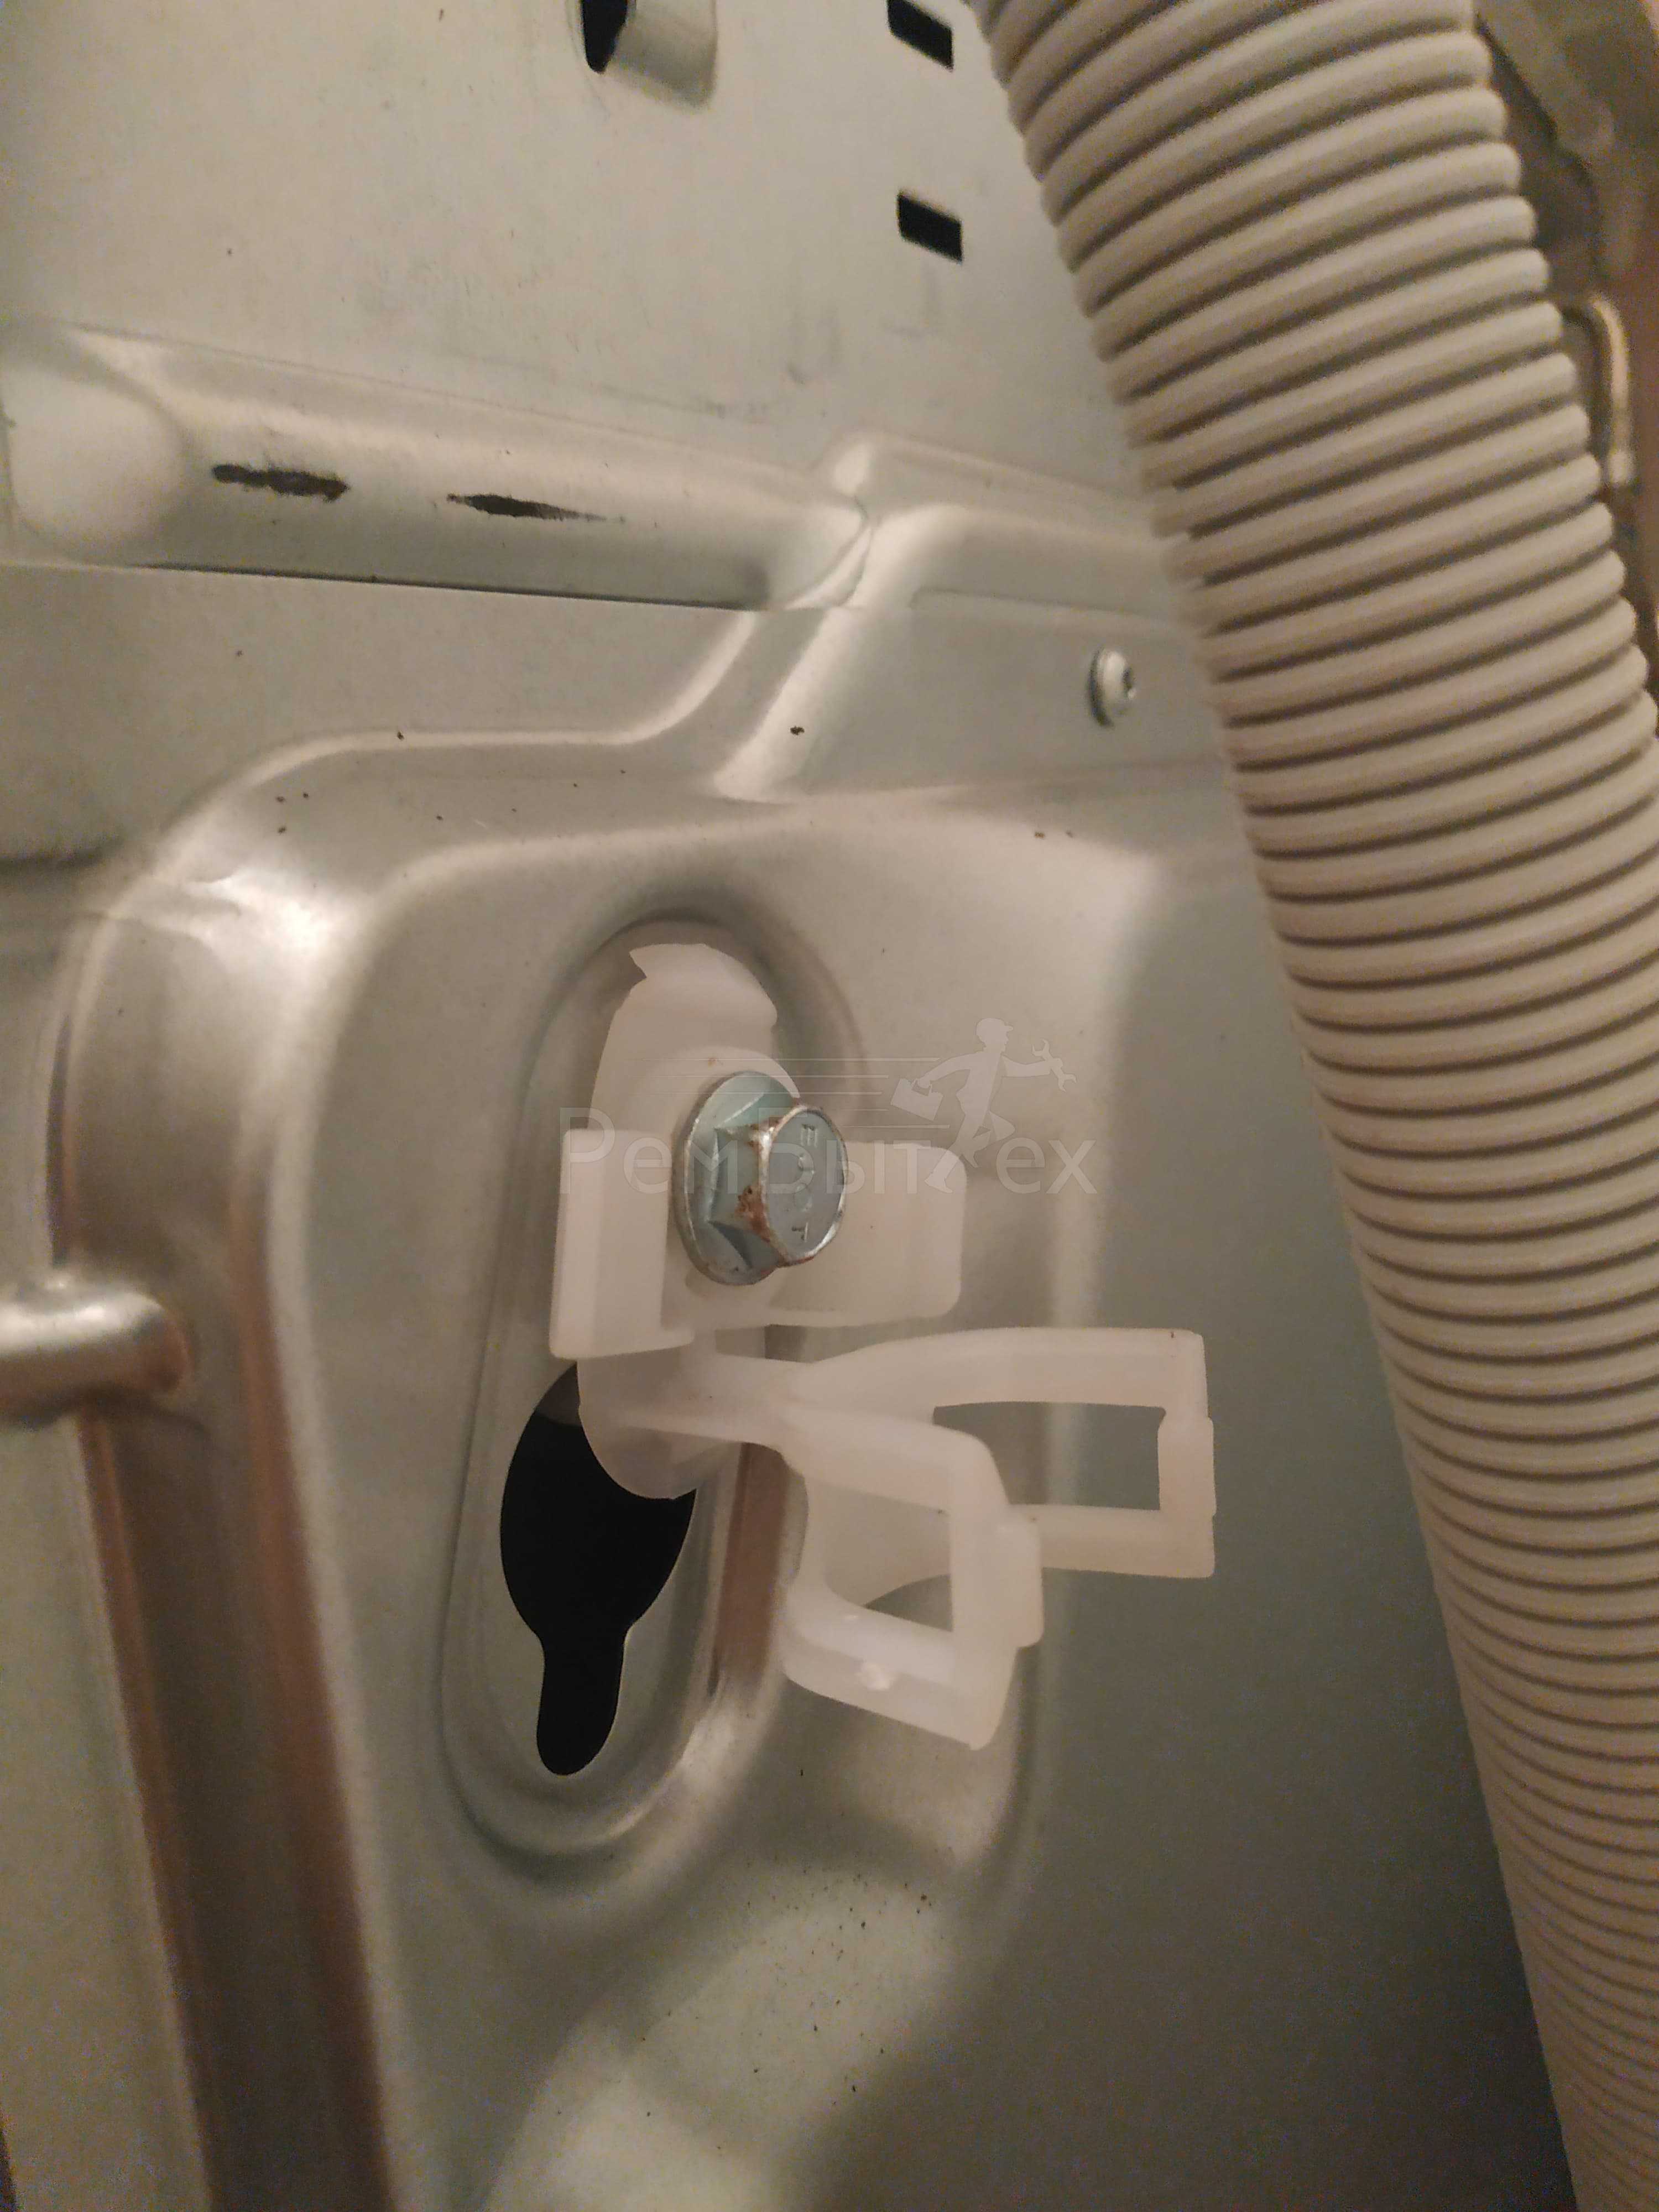 При включении стиральной машины выбивает автомат